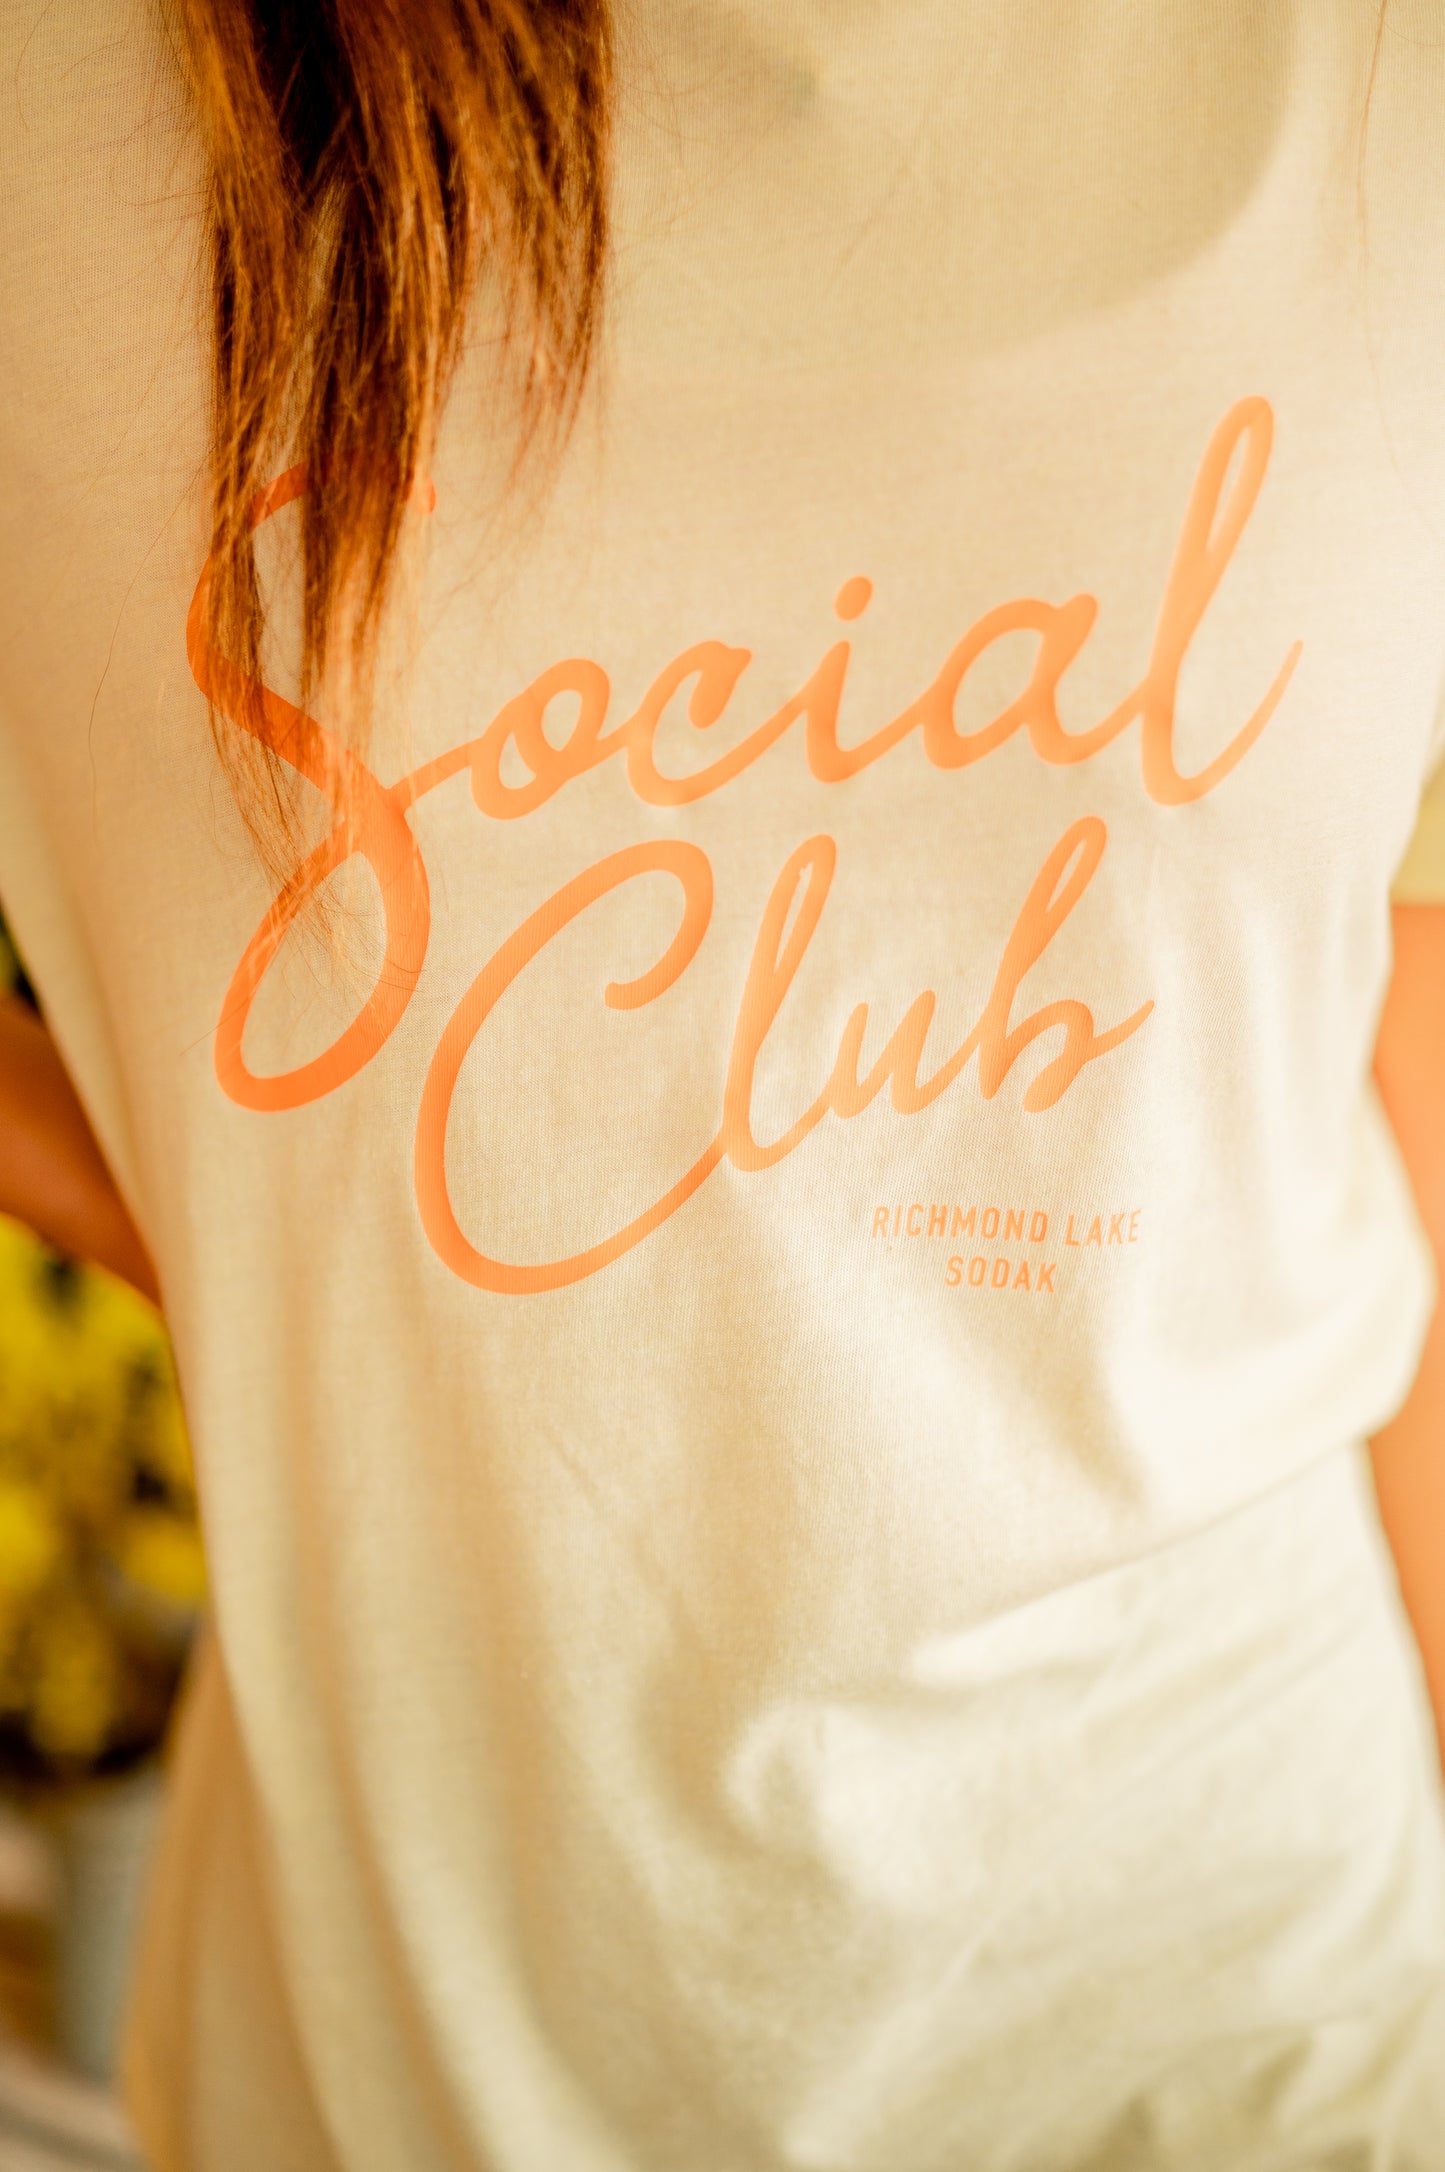 Social Club Tee - Richmond